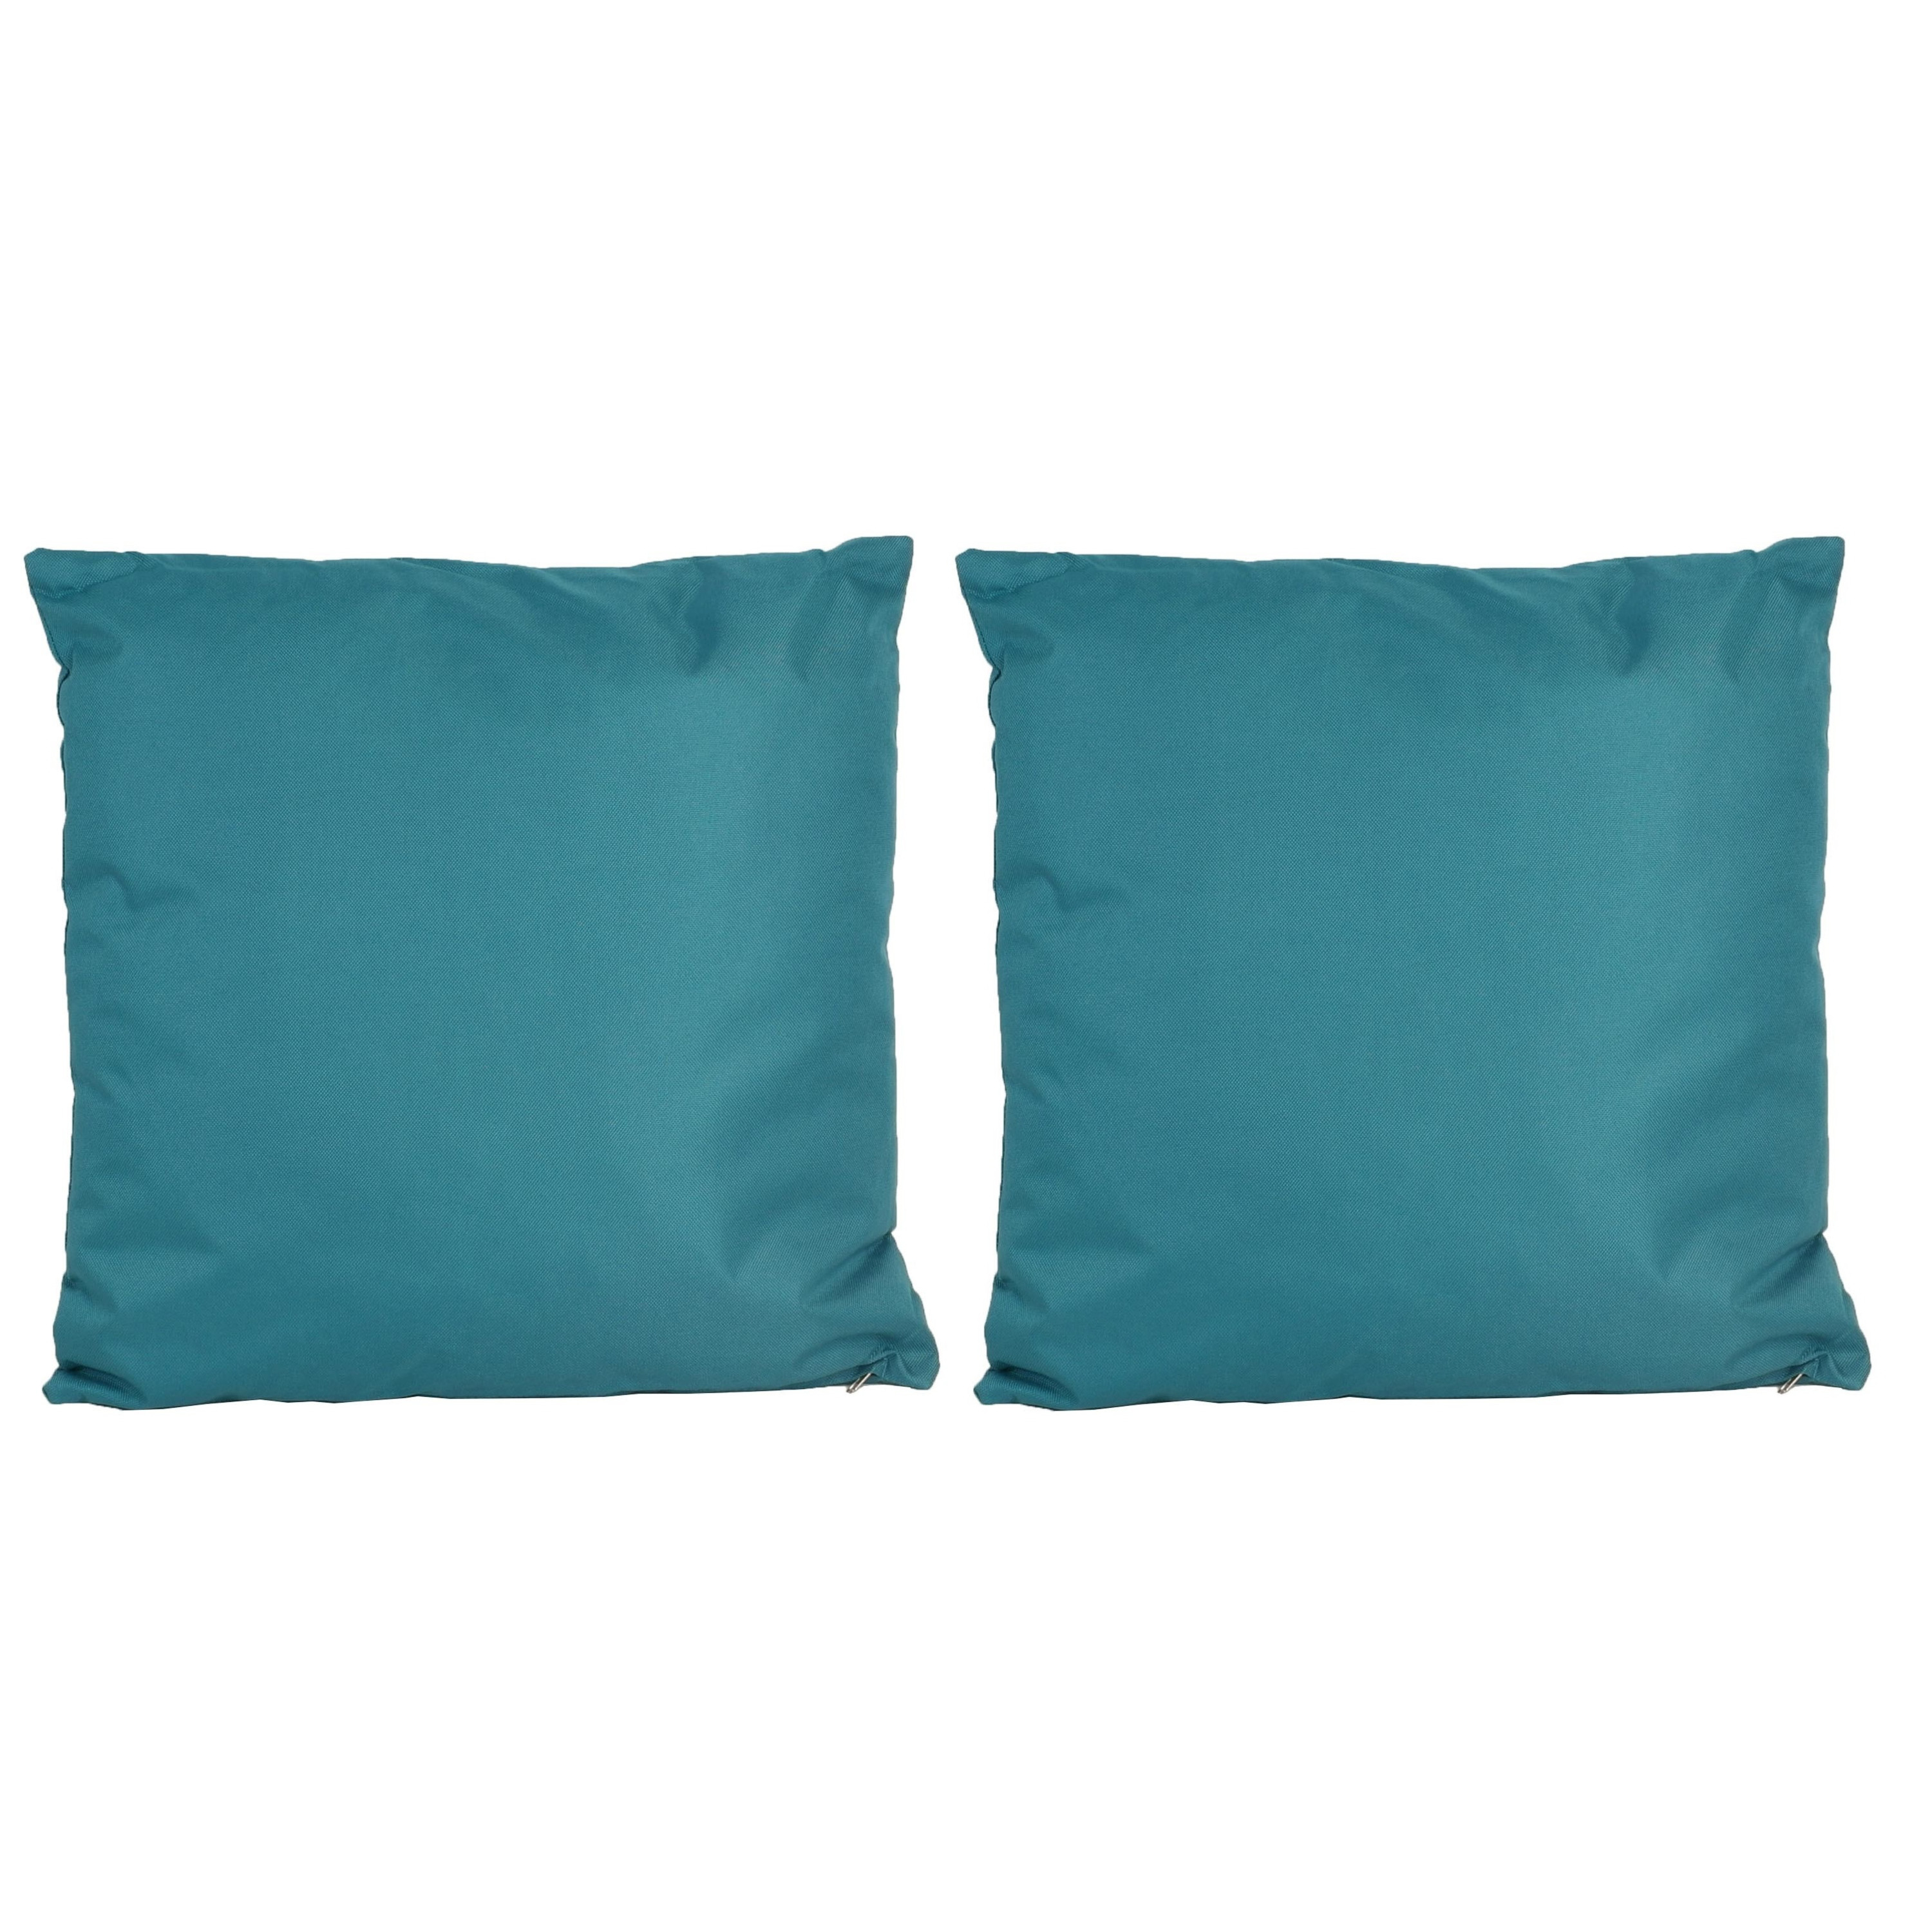 6x Bank-sier kussens voor binnen en buiten in de kleur petrol blauw 45 x 45 cm